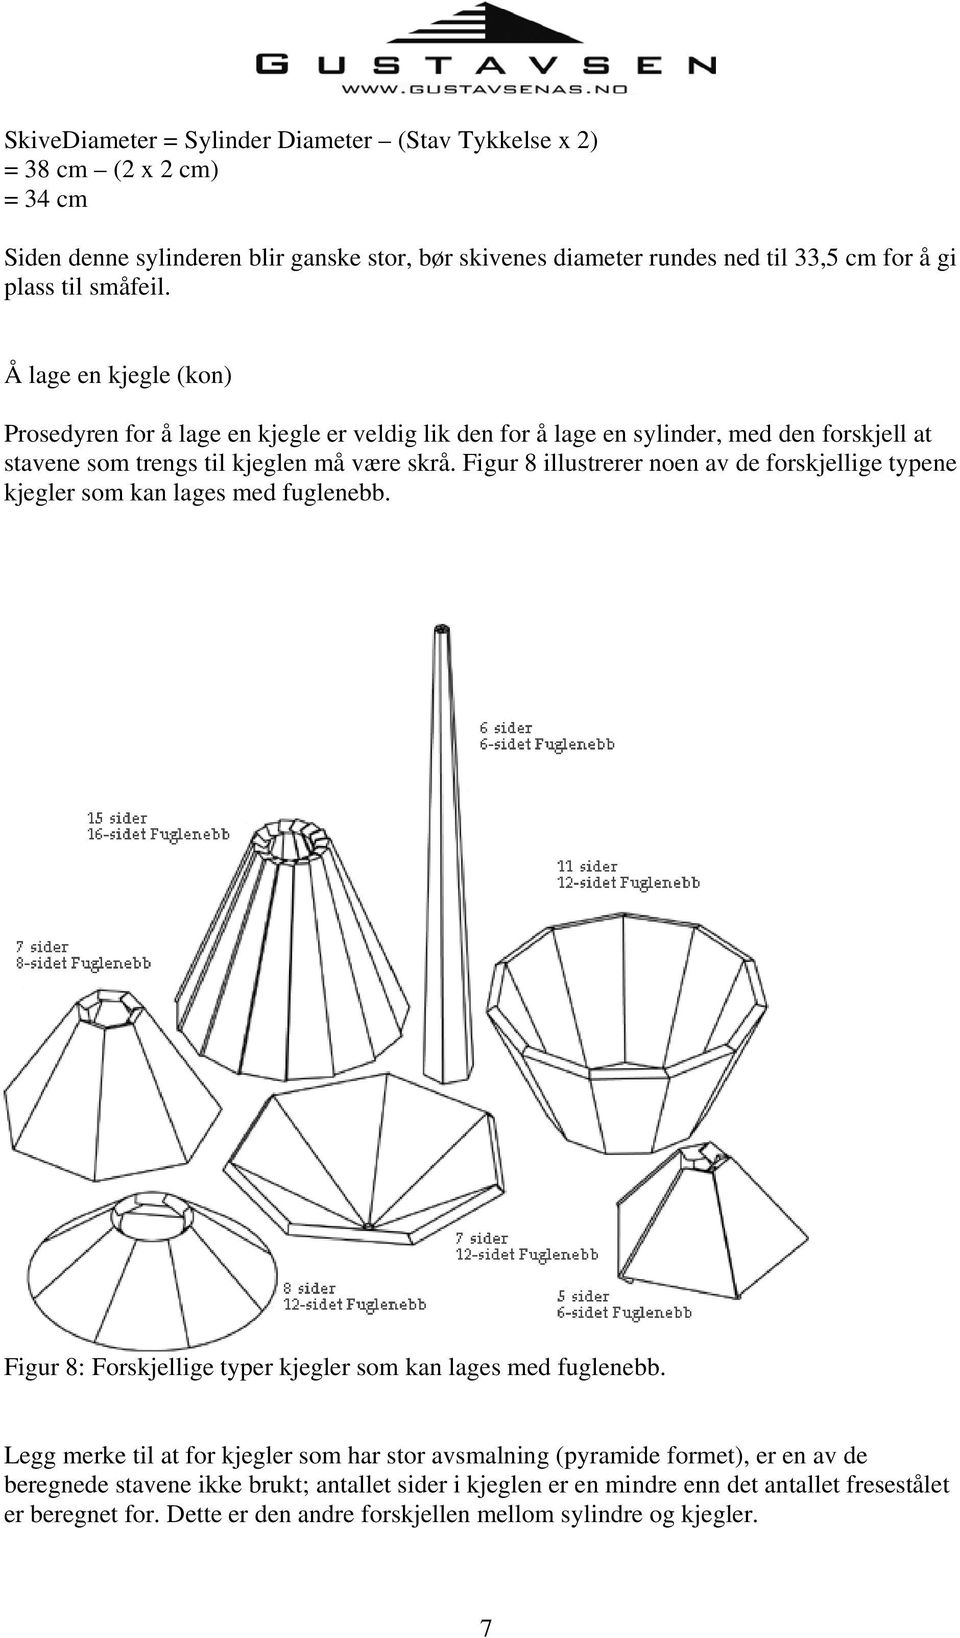 Figur 8 illustrerer noen av de forskjellige typene kjegler som kan lages med fuglenebb. Figur 8: Forskjellige typer kjegler som kan lages med fuglenebb.